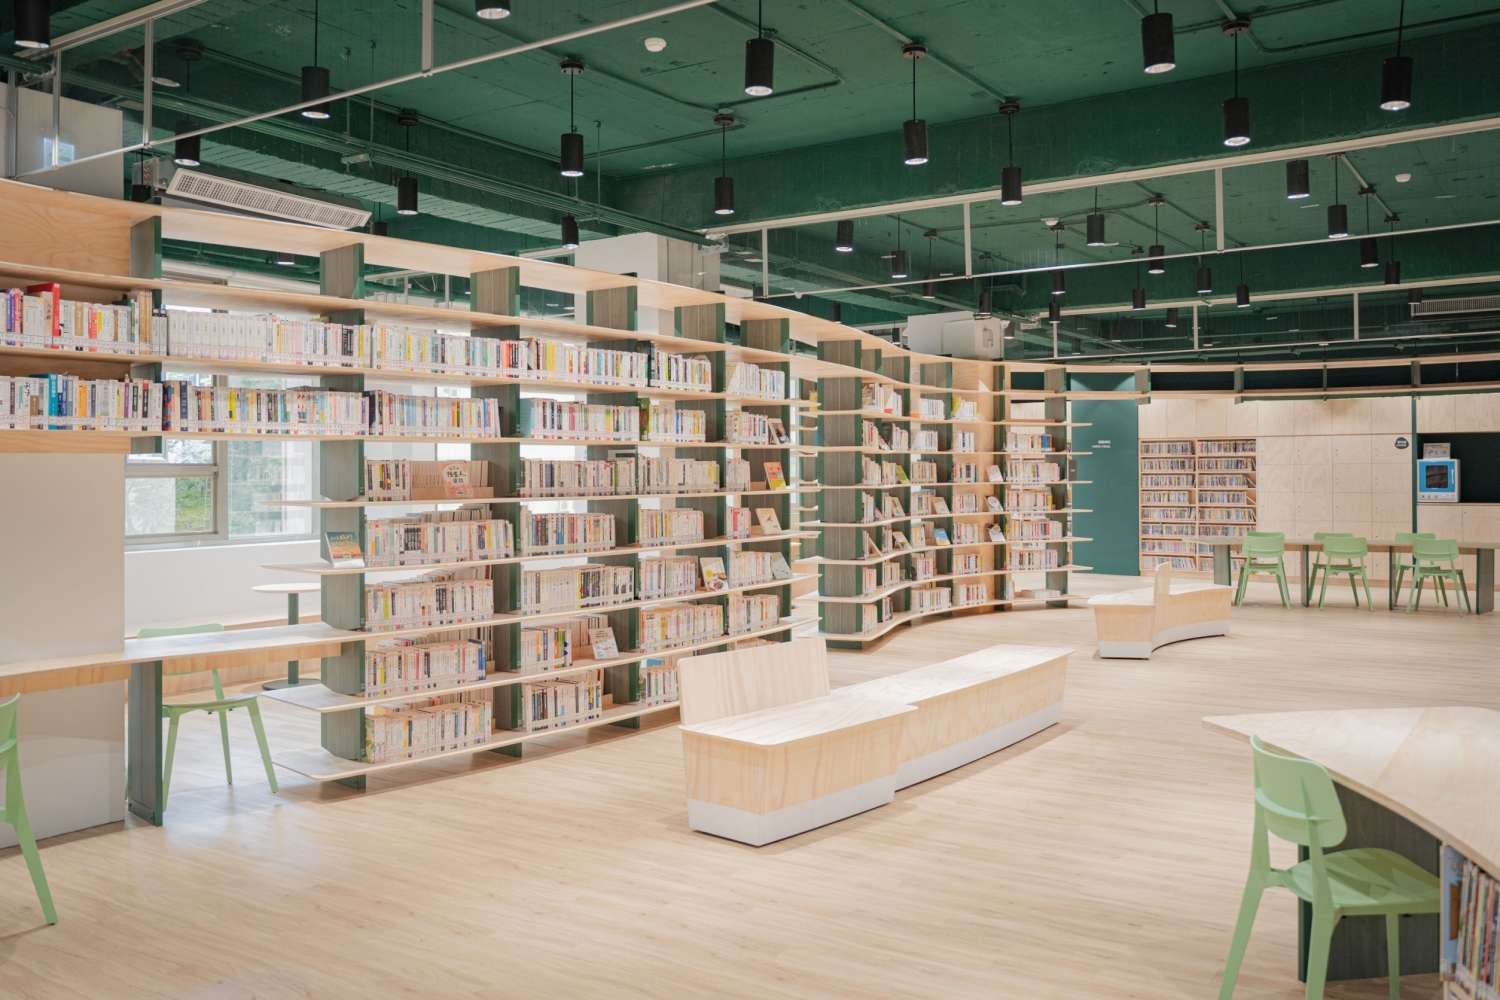 「新竹市圖書館龍山分館」為竹市最大圖書館分館，設計師以特殊「虫襖綠」妝點空間，打造閱讀森林。